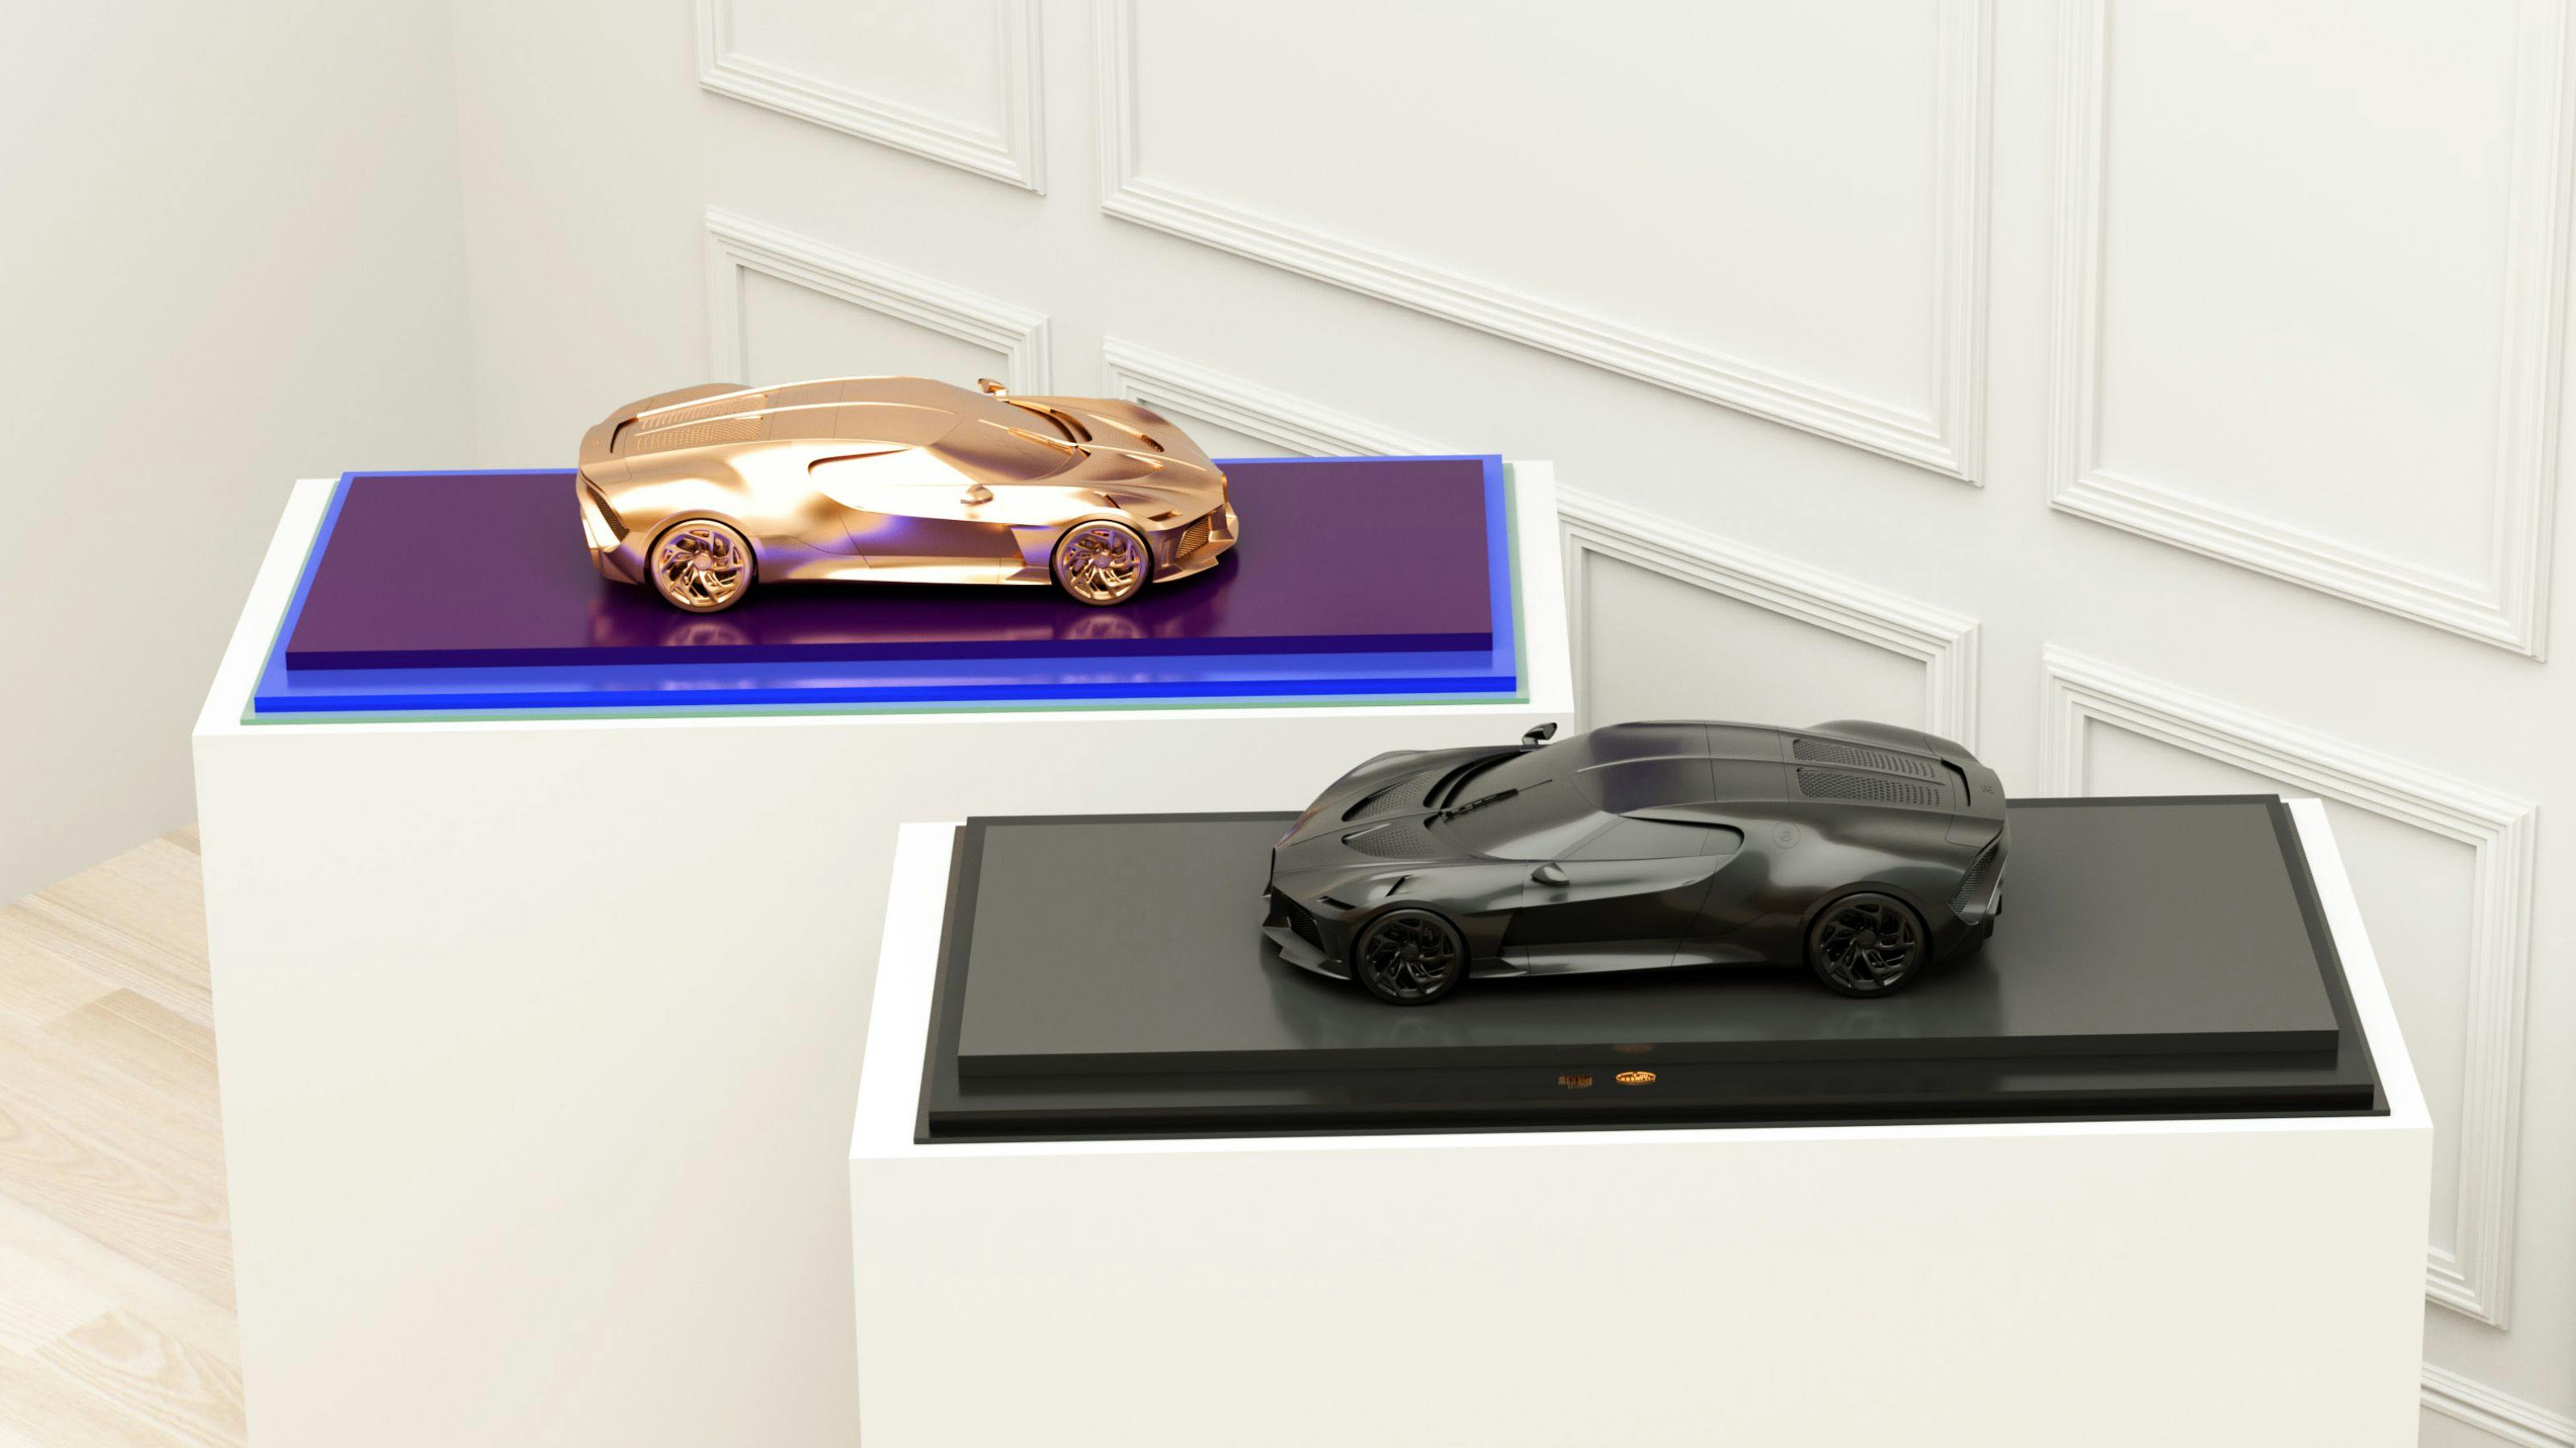 Vente aux enchères de la sculpture Bugatti Asprey « La Voiture Noire » et de son NFT